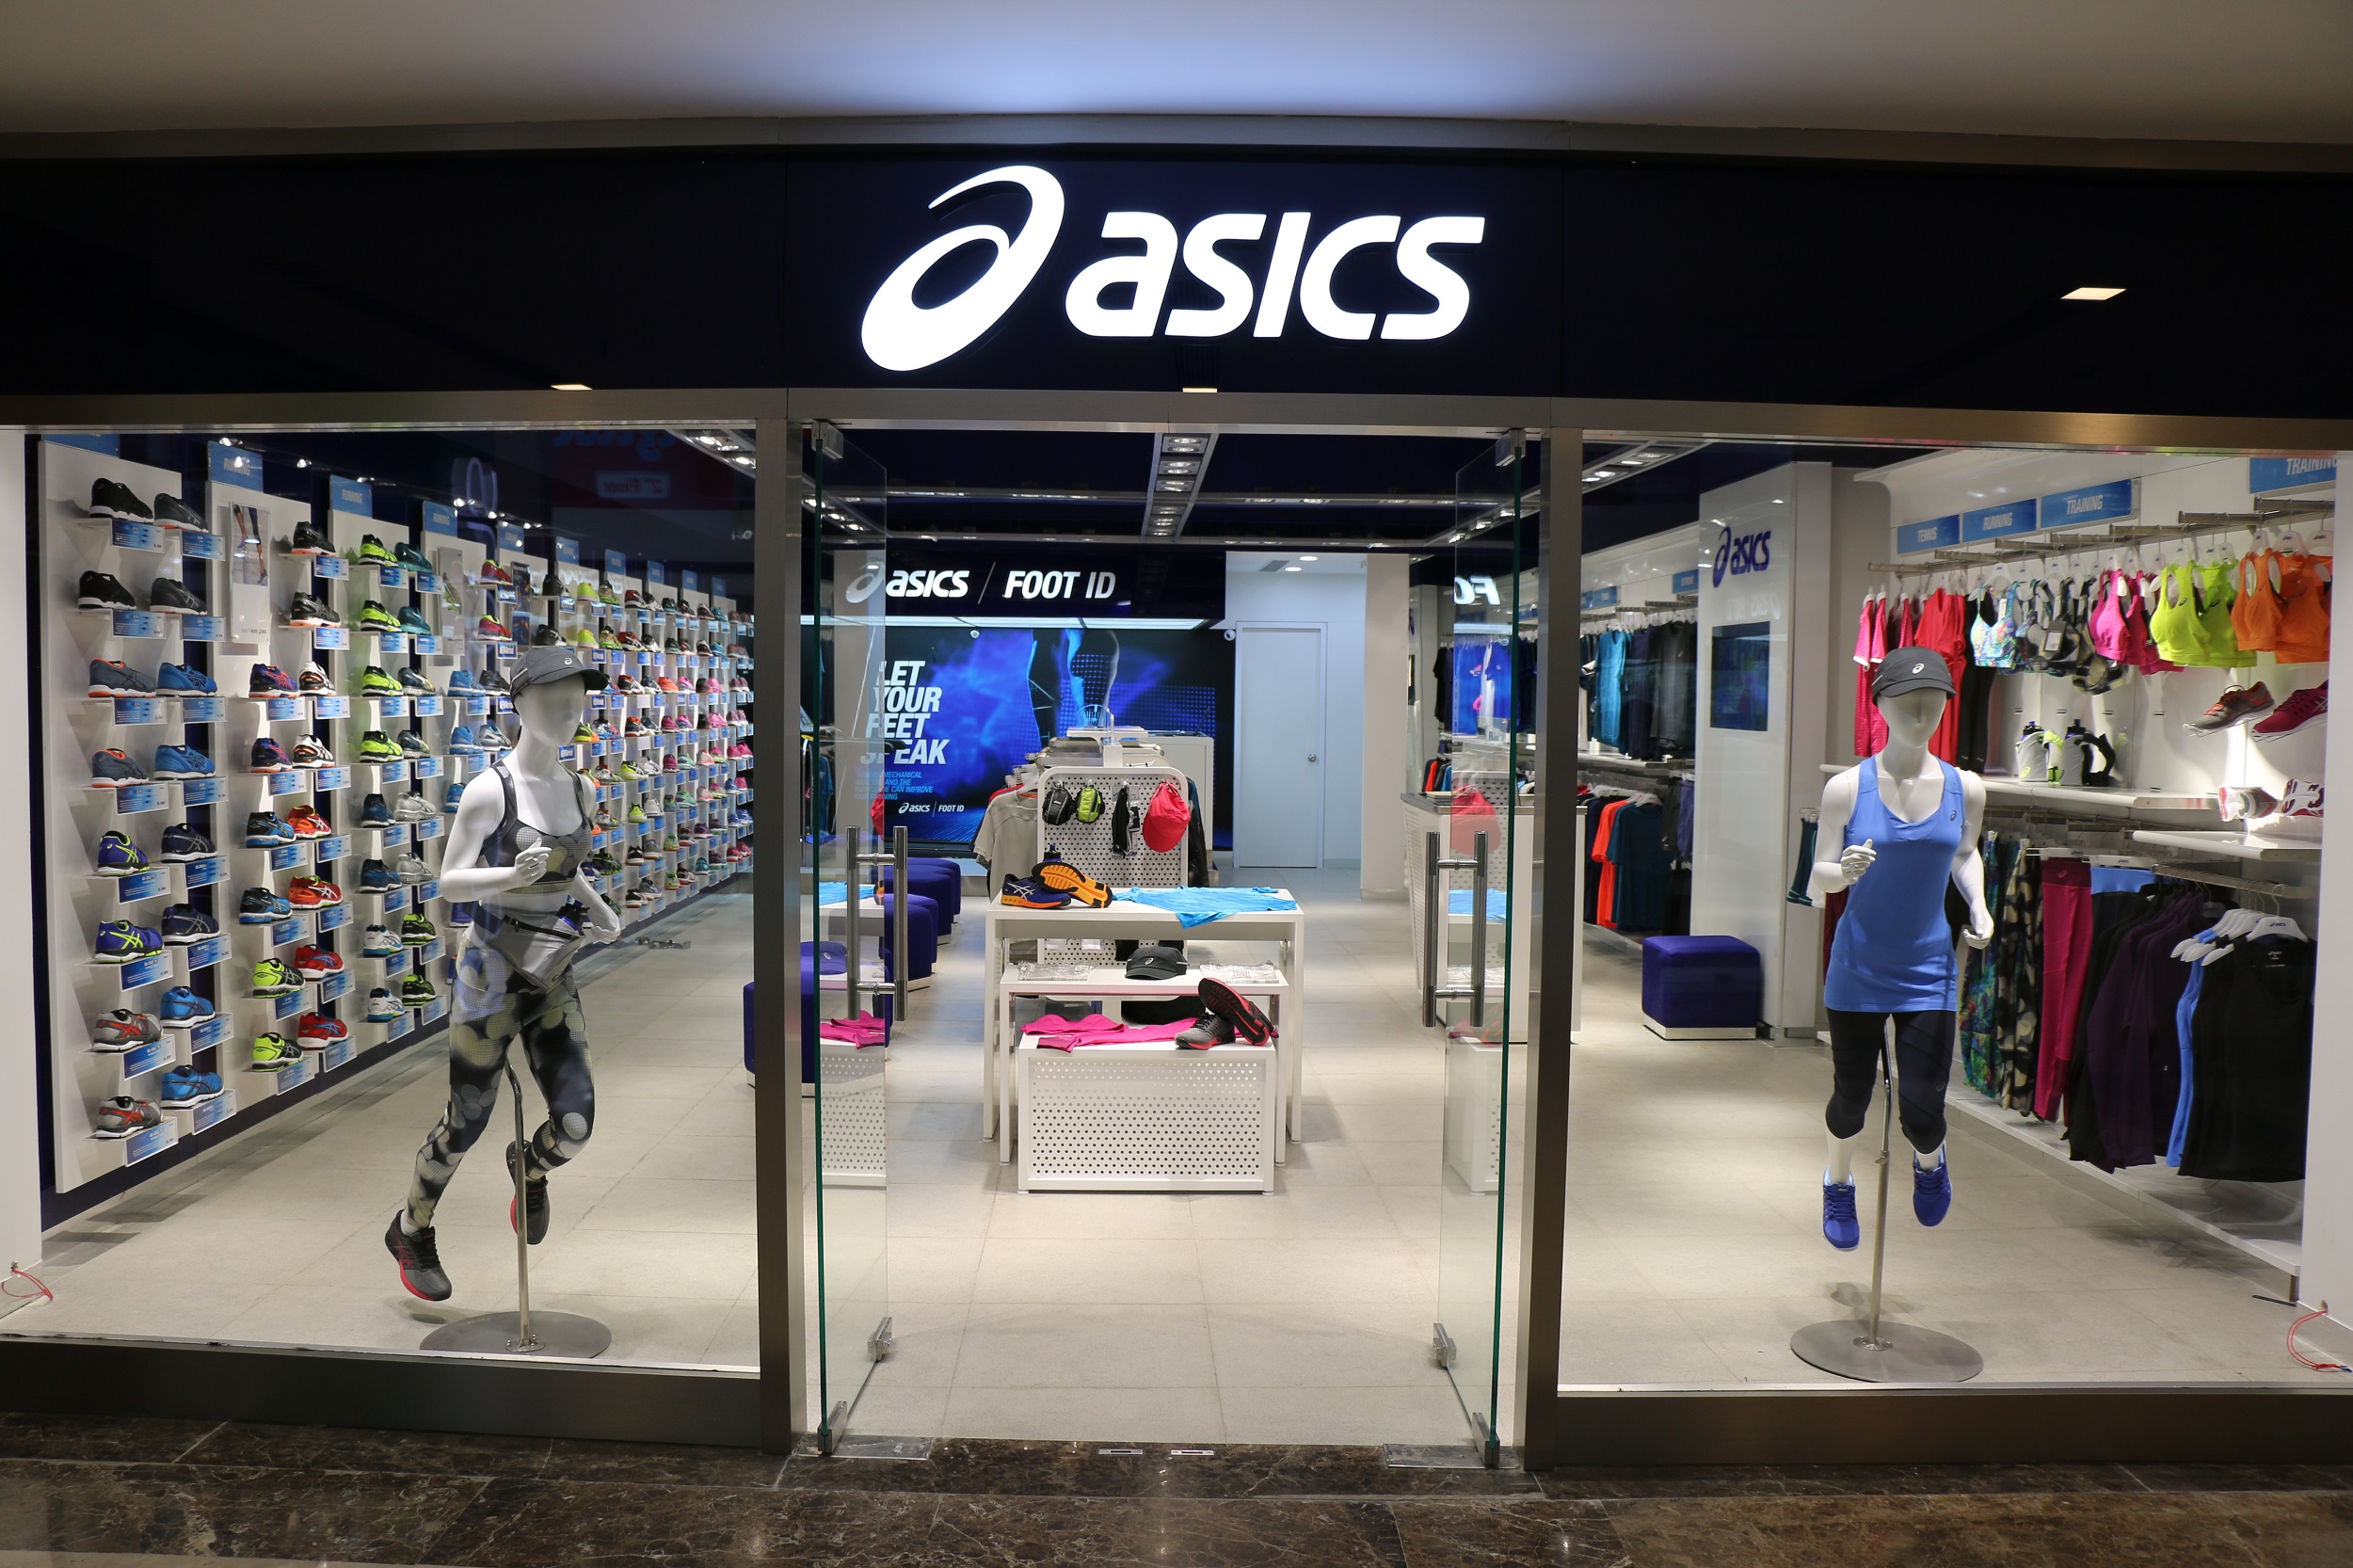 Магазин asics в москве. Андижан фирменный магазин асикс. ASICS фирменные магазины. Асикс одежда. Фирменный магазин асикс в Москве.